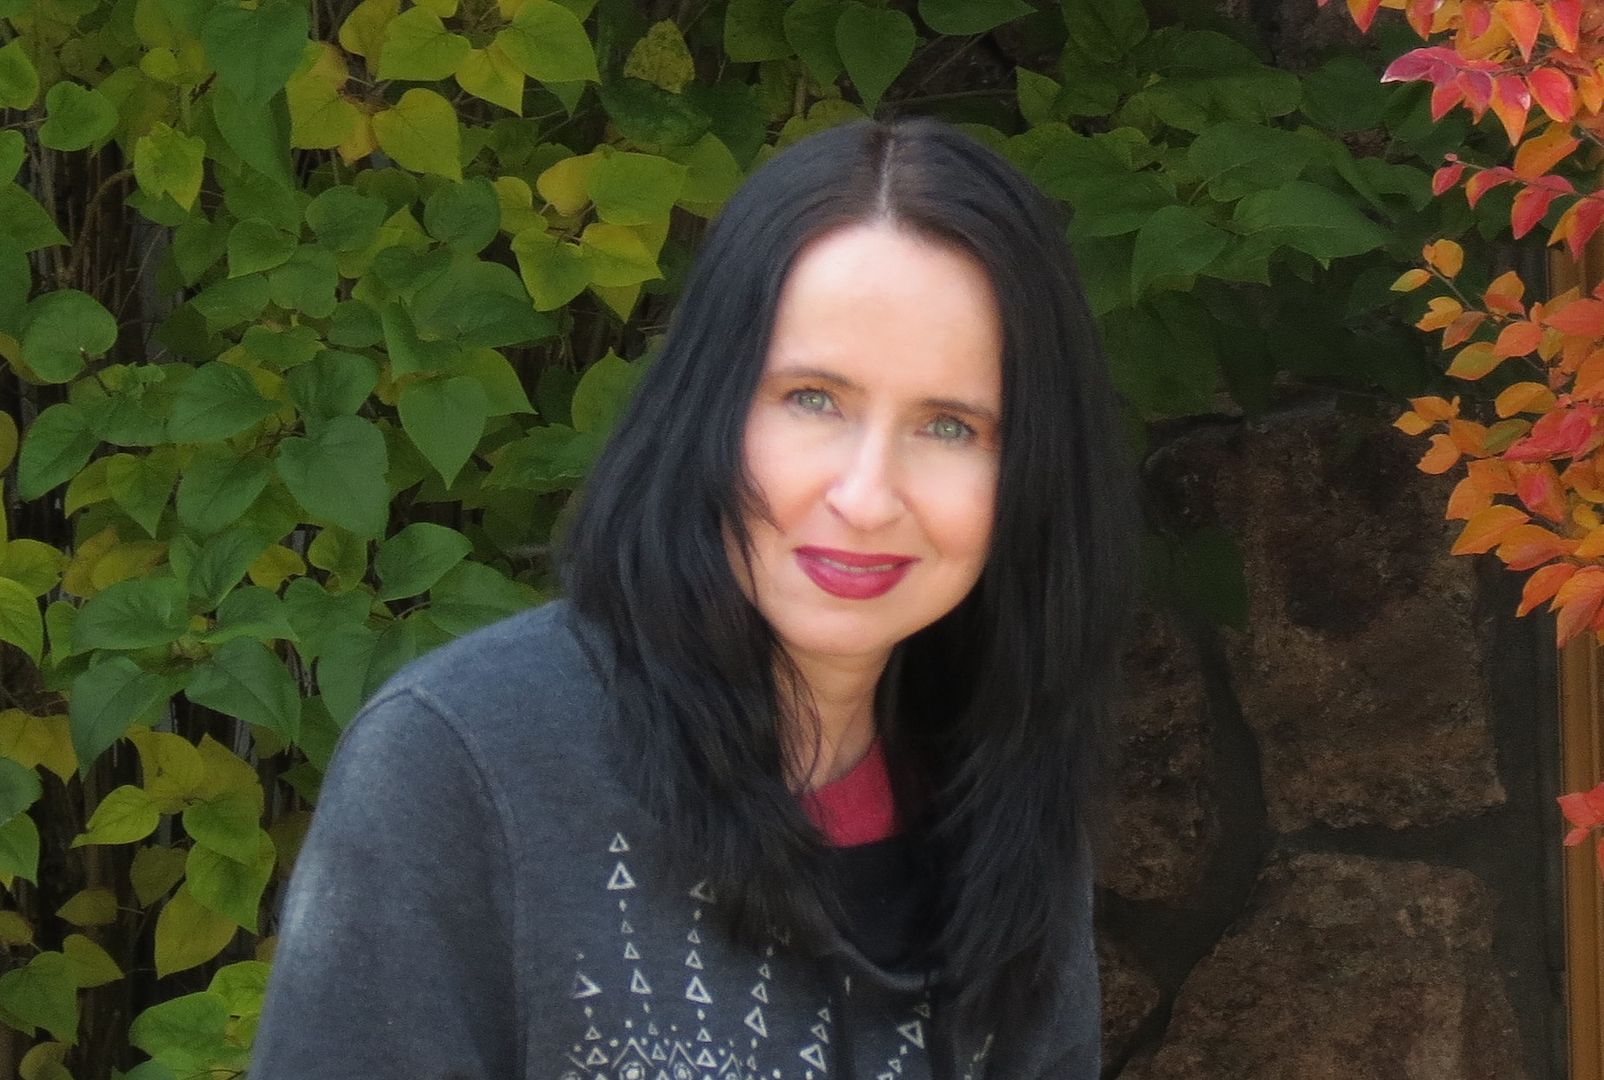 Author Lisa Renee Jones